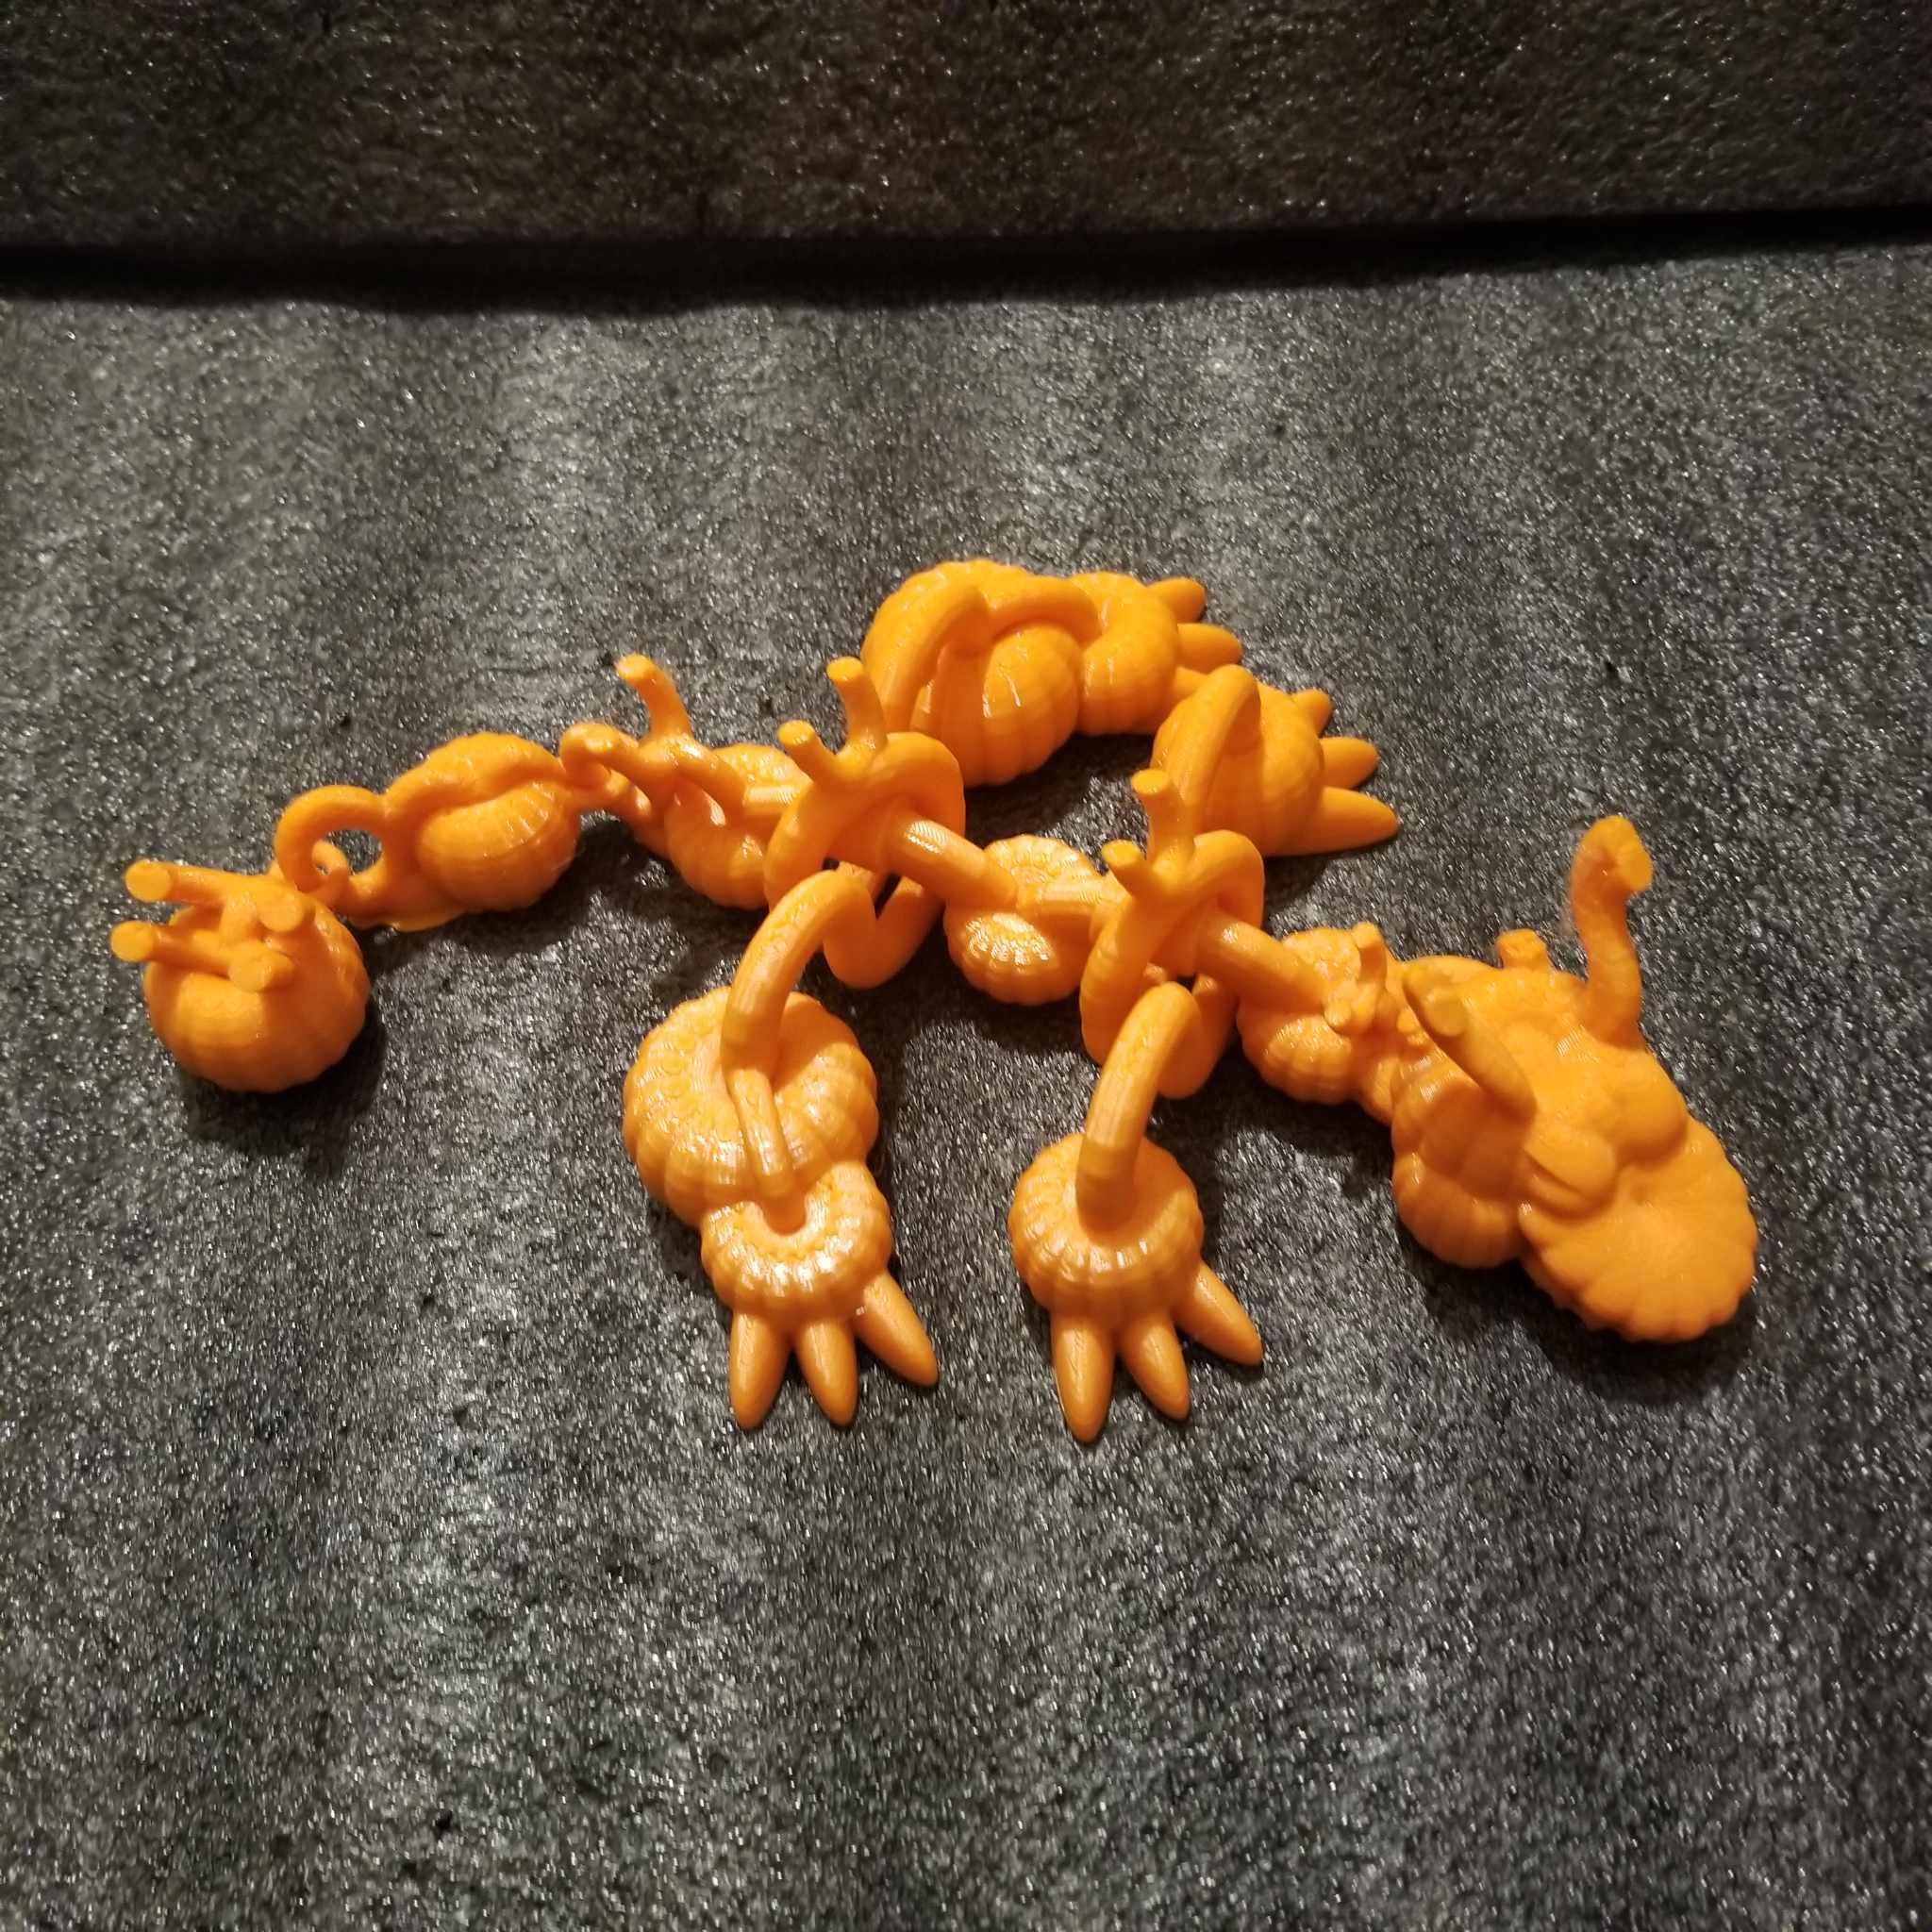 Shakaworld3d Baby Pumpkin Patch Dragon fidget spinner  3d model